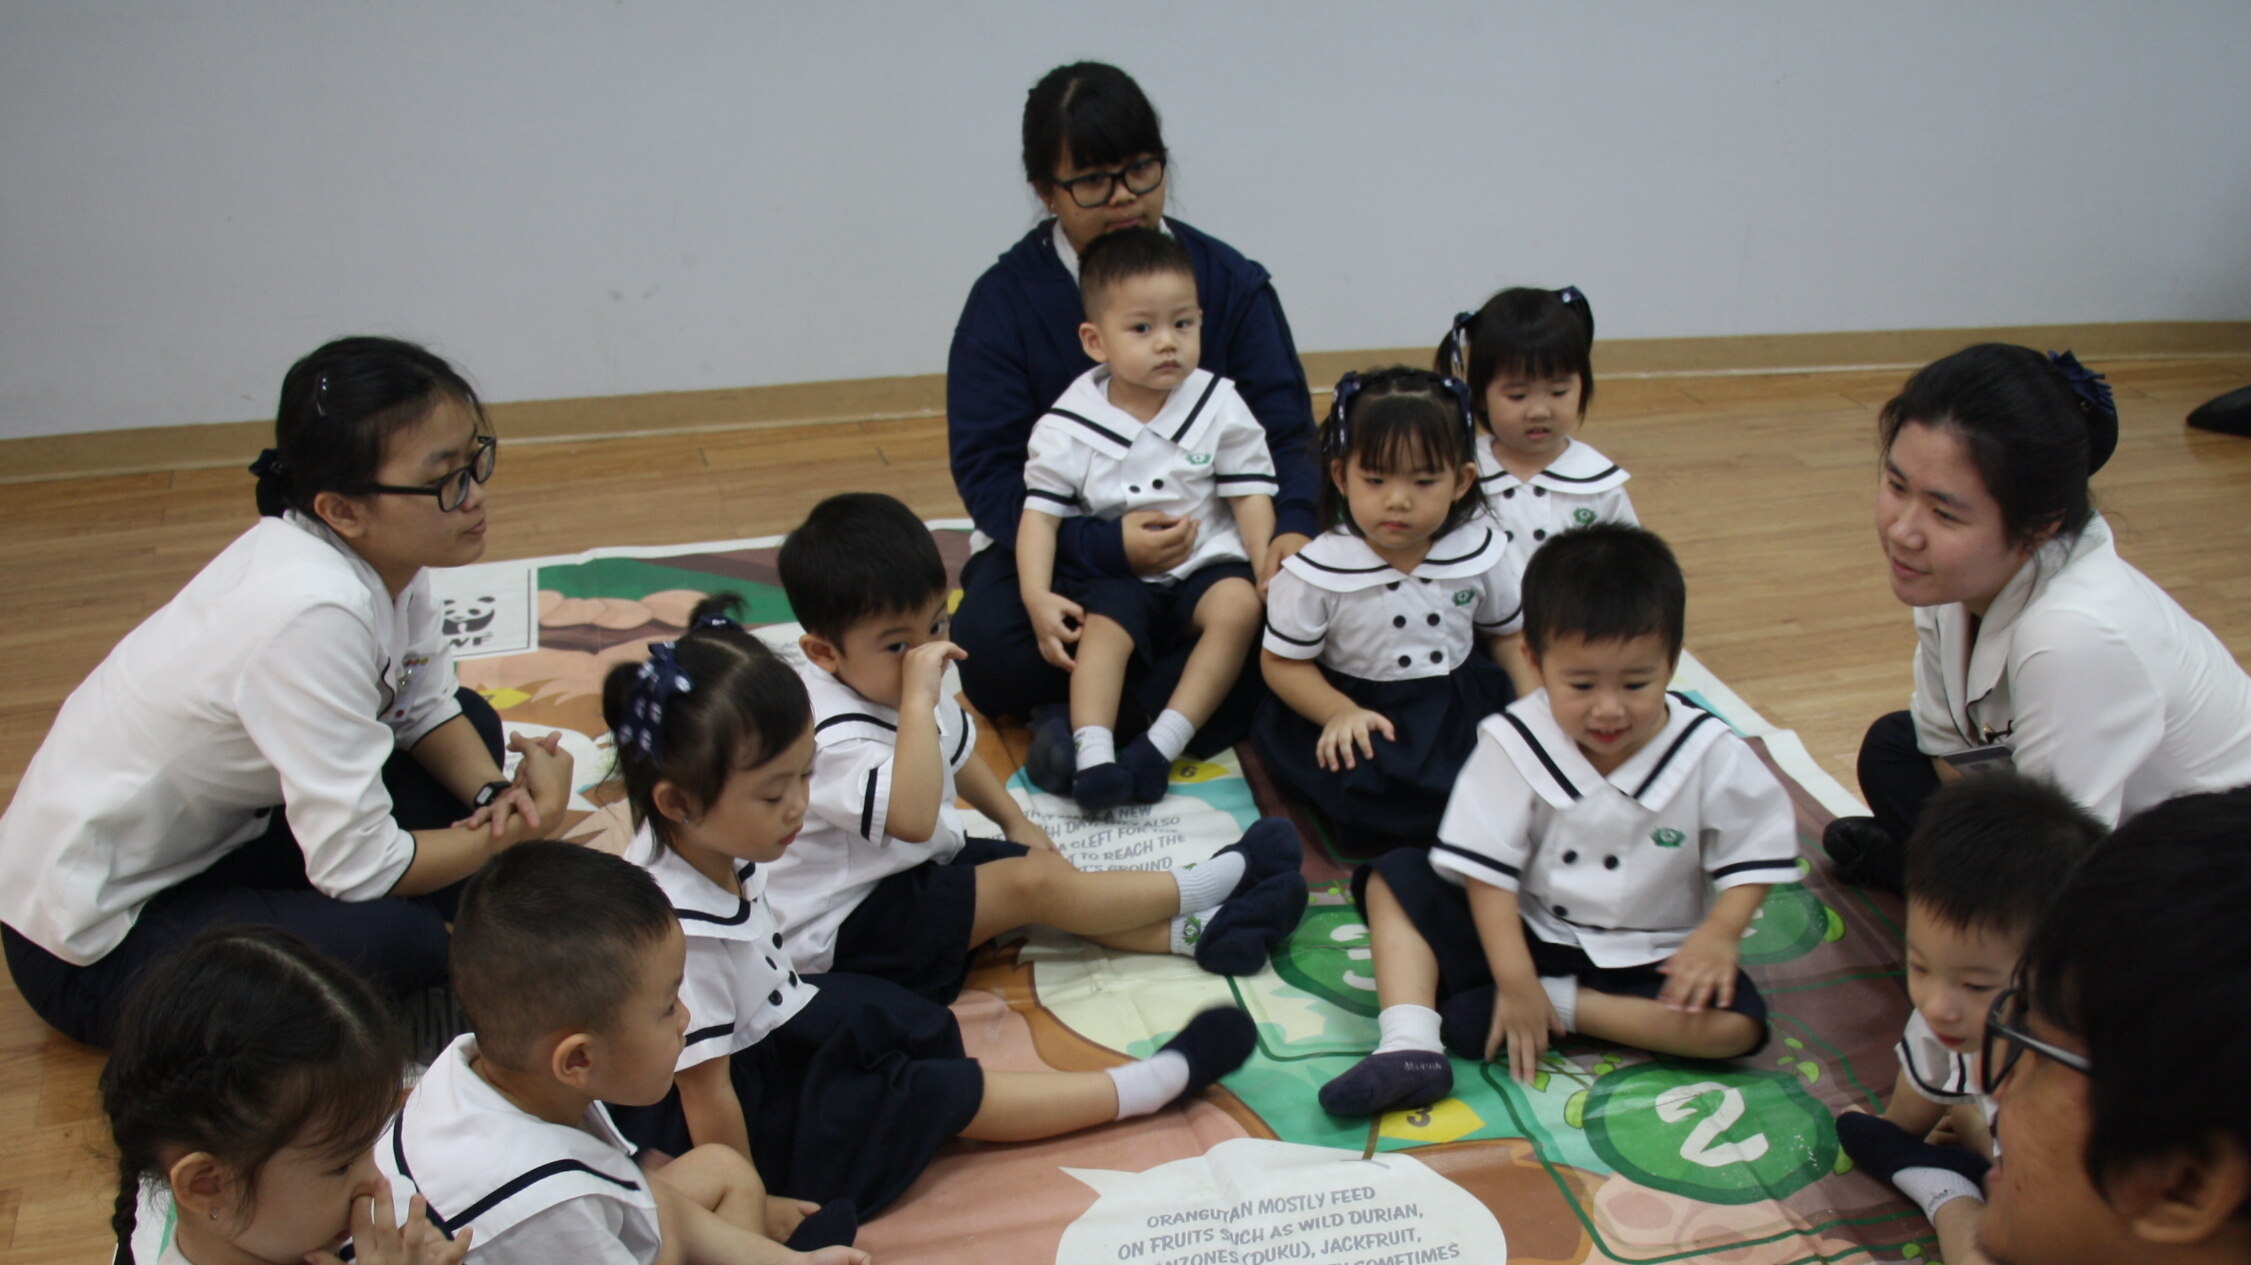 PANDA MOBILE AT TZU CHI SCHOOL